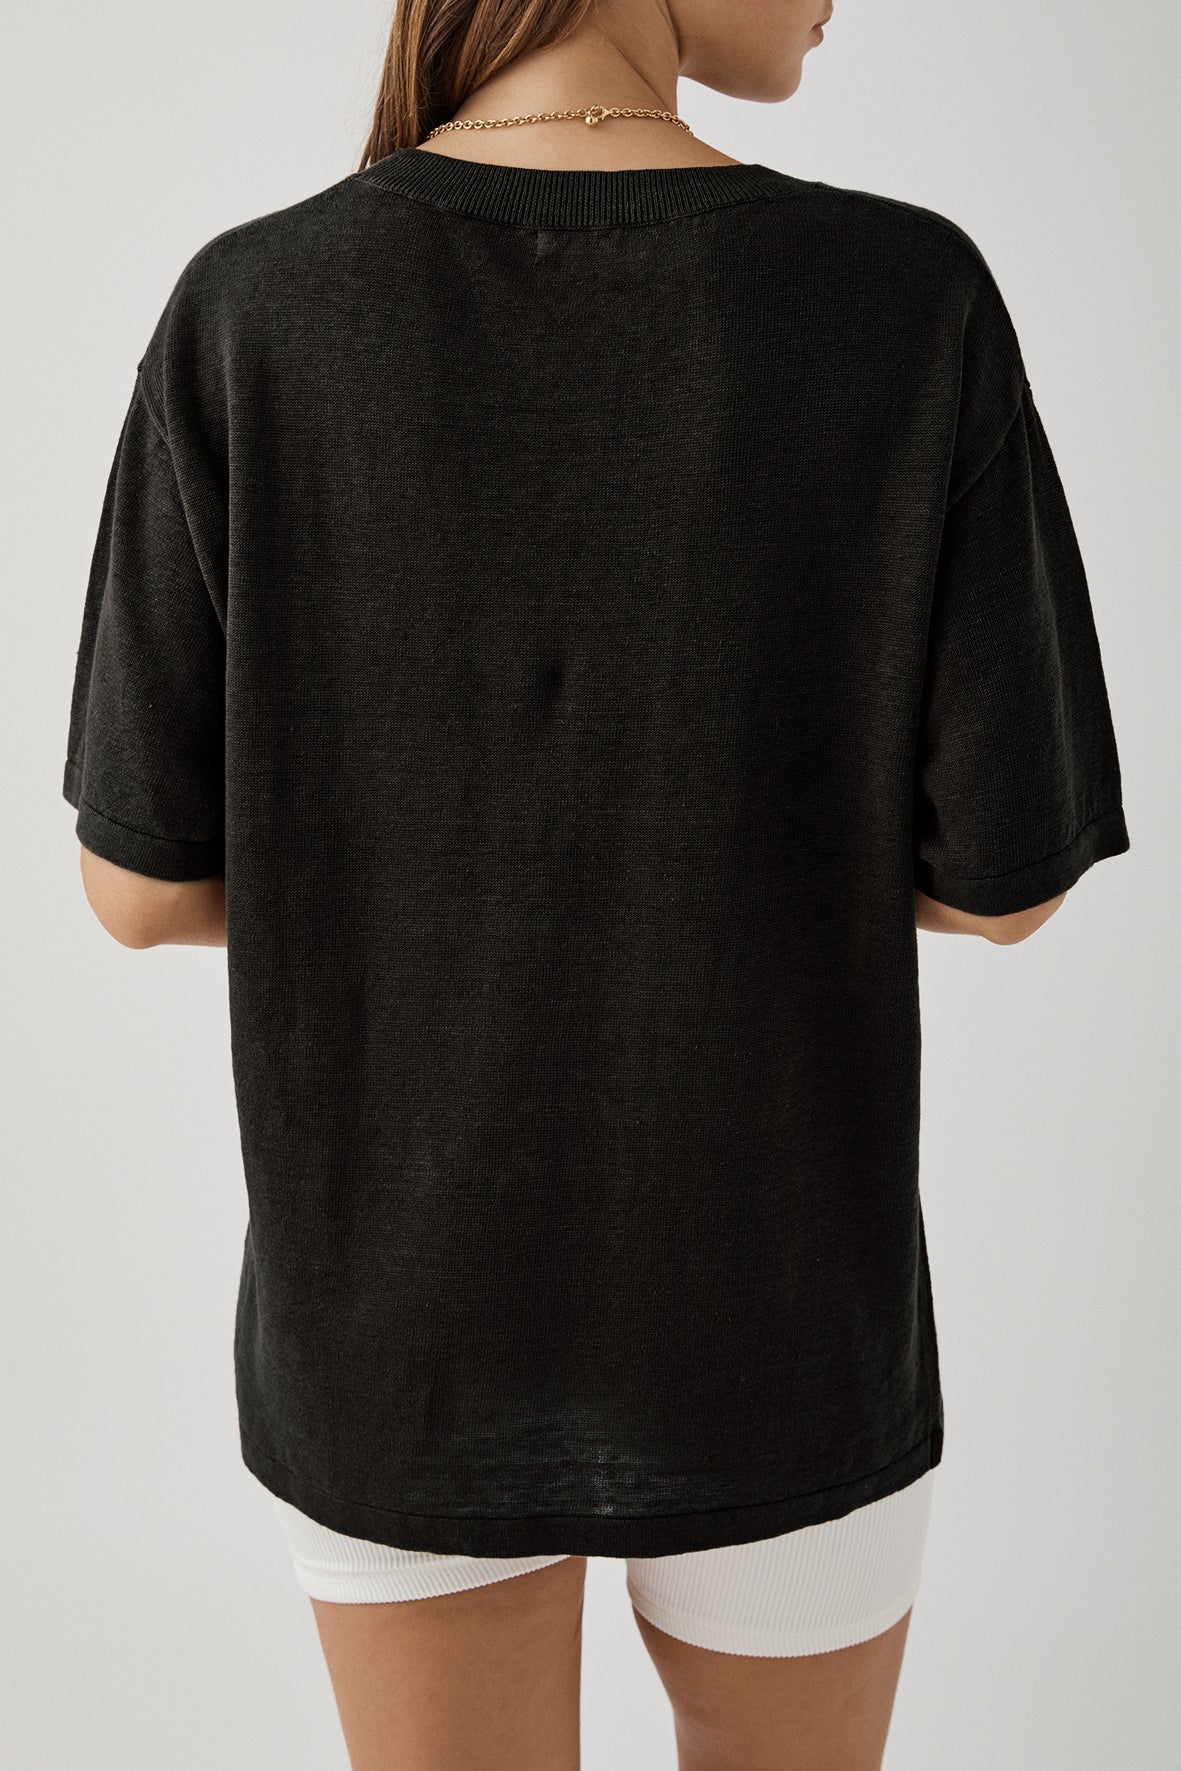 Hugo Tshirt - Black